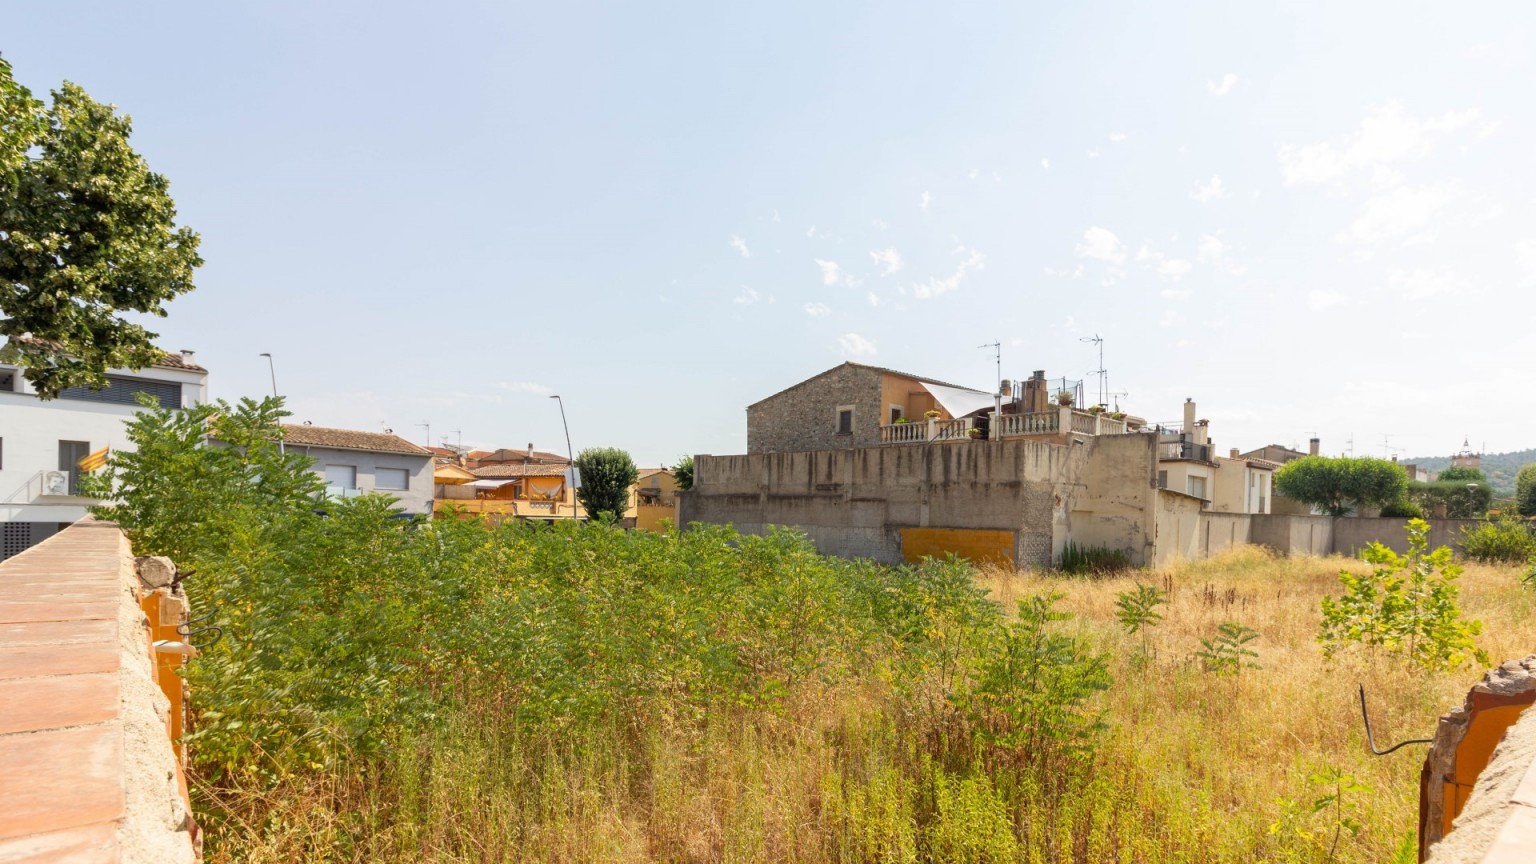 Terrain à bâtir à vendre, situé à Bescanó. 